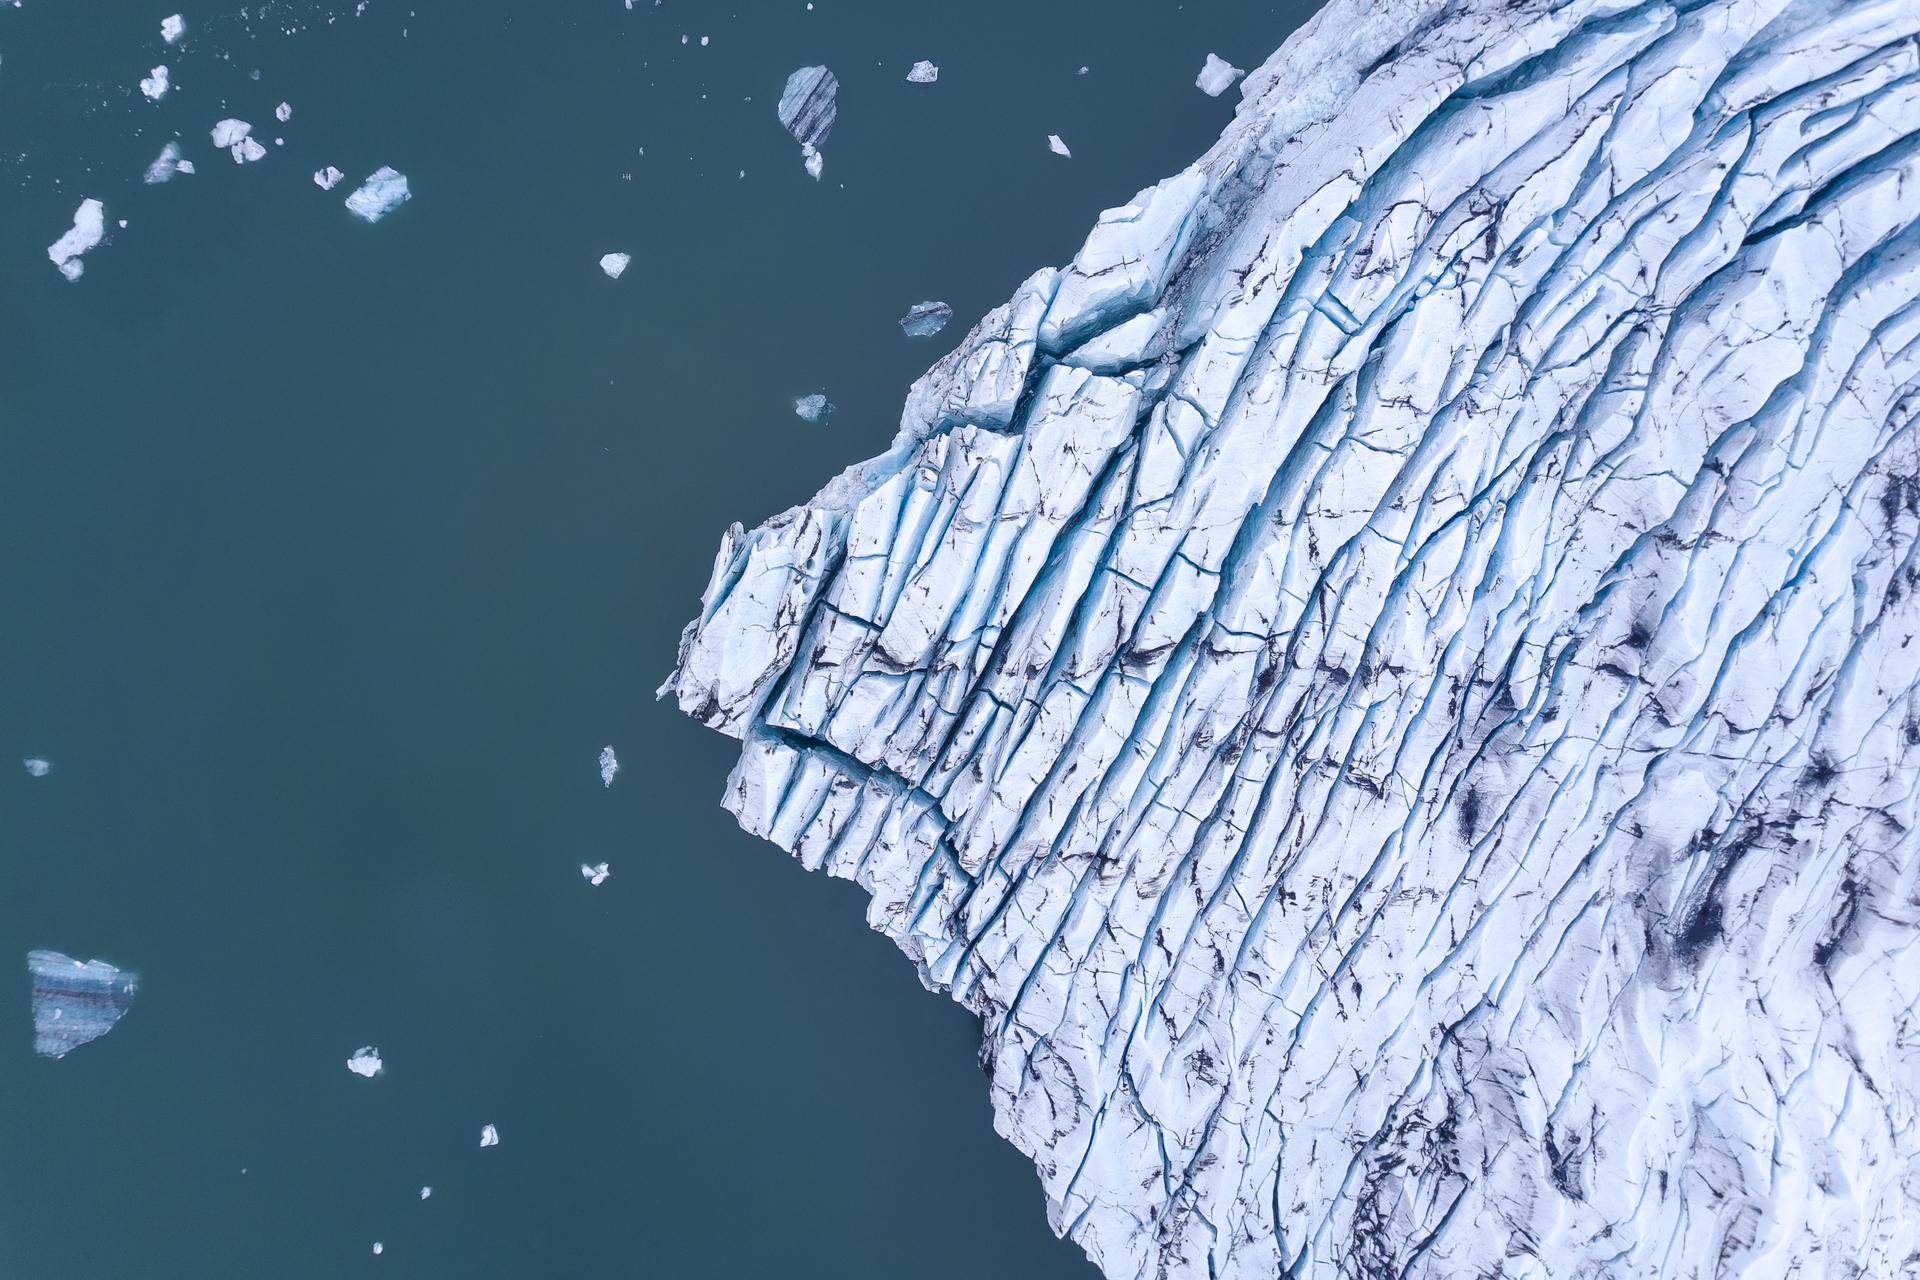 Breiðamerkurjökull glacier